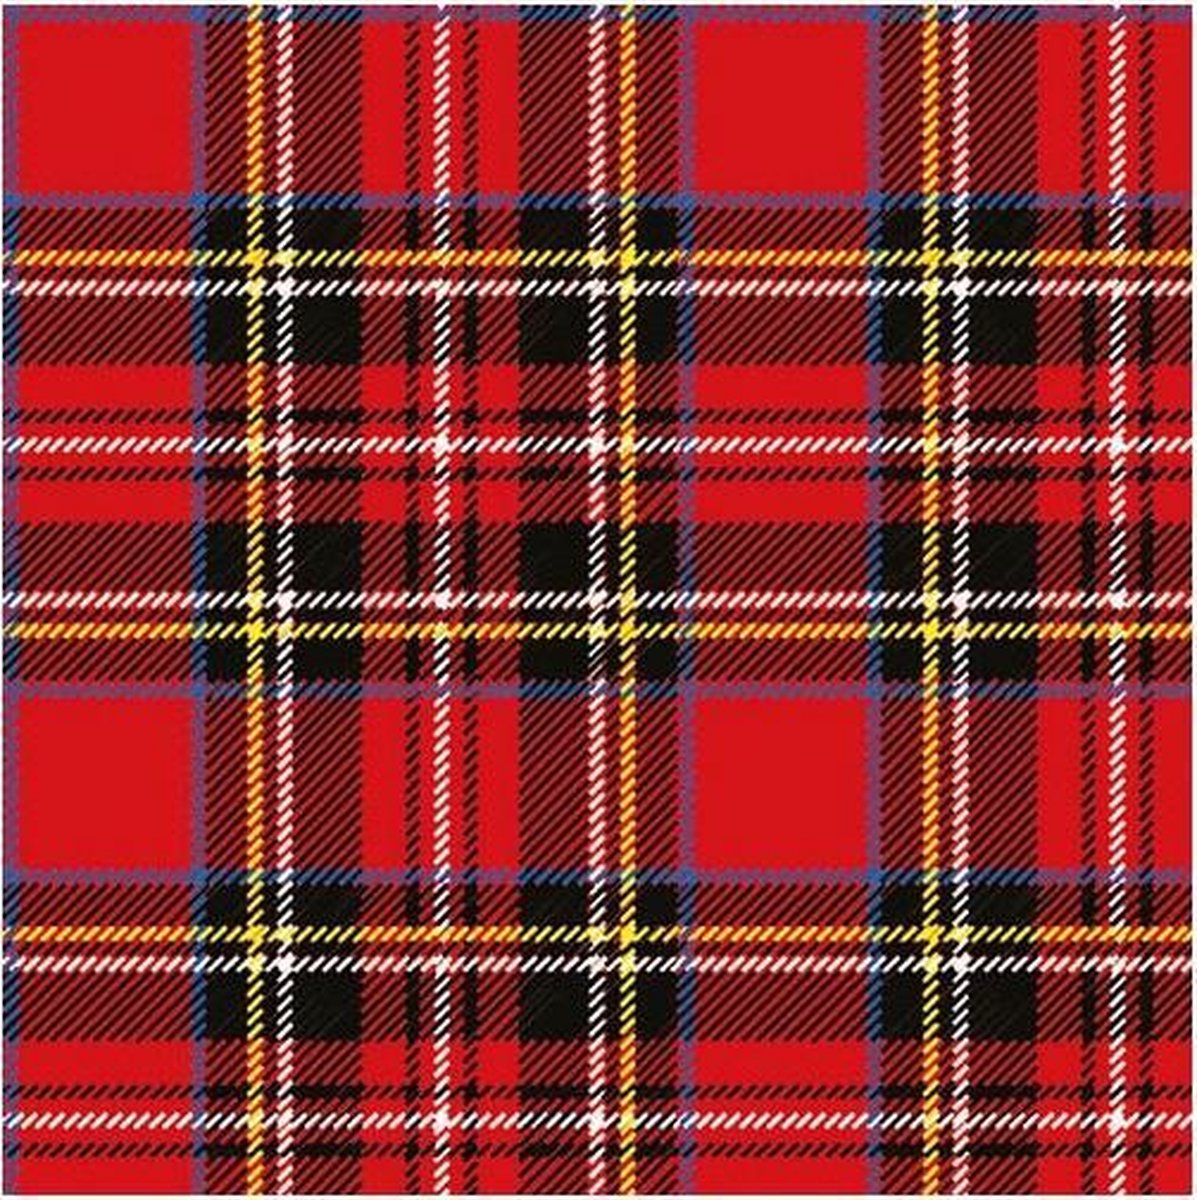 40x Rode Schotse ruit servetten 33 x 33 cm - papieren wegwerp servetjes - Rood/Schotse ruit versieringen/decoratiestafeldecoraties/feestversiering - Ambiente